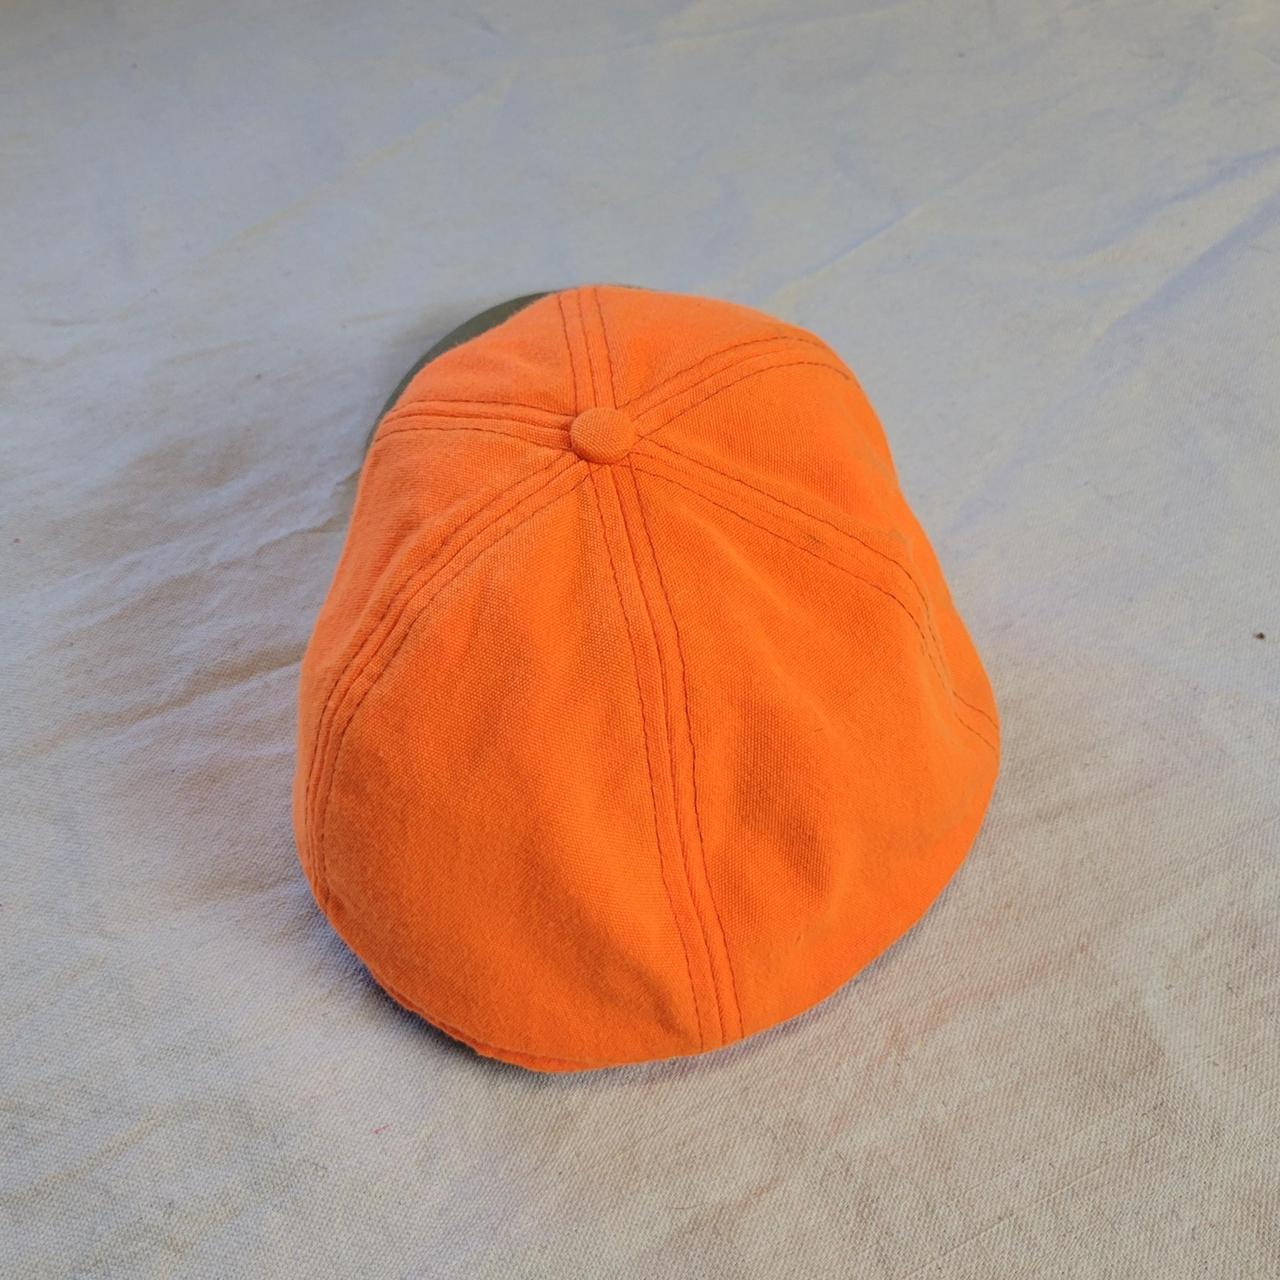 Product Image 4 - Vintage Filson orange hat

Super cool